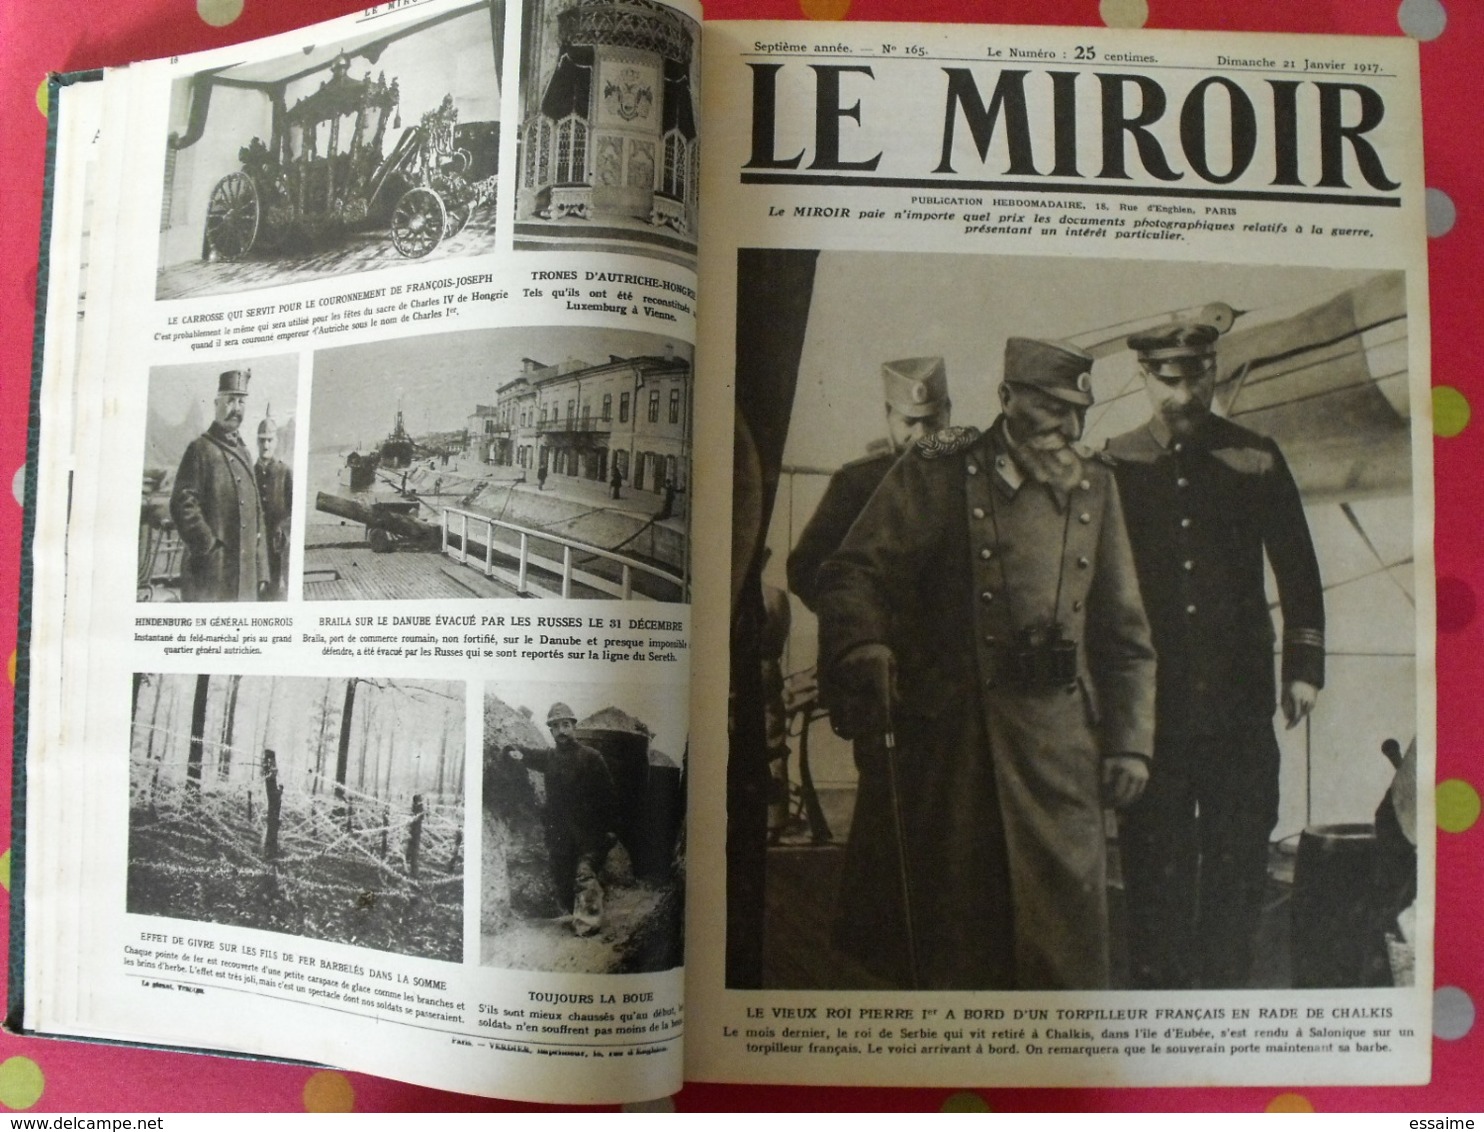 Le miroir. année complète 1917. 52 numéros. la guerre 14-18 très illustrée. recueil reliure. révolution russe